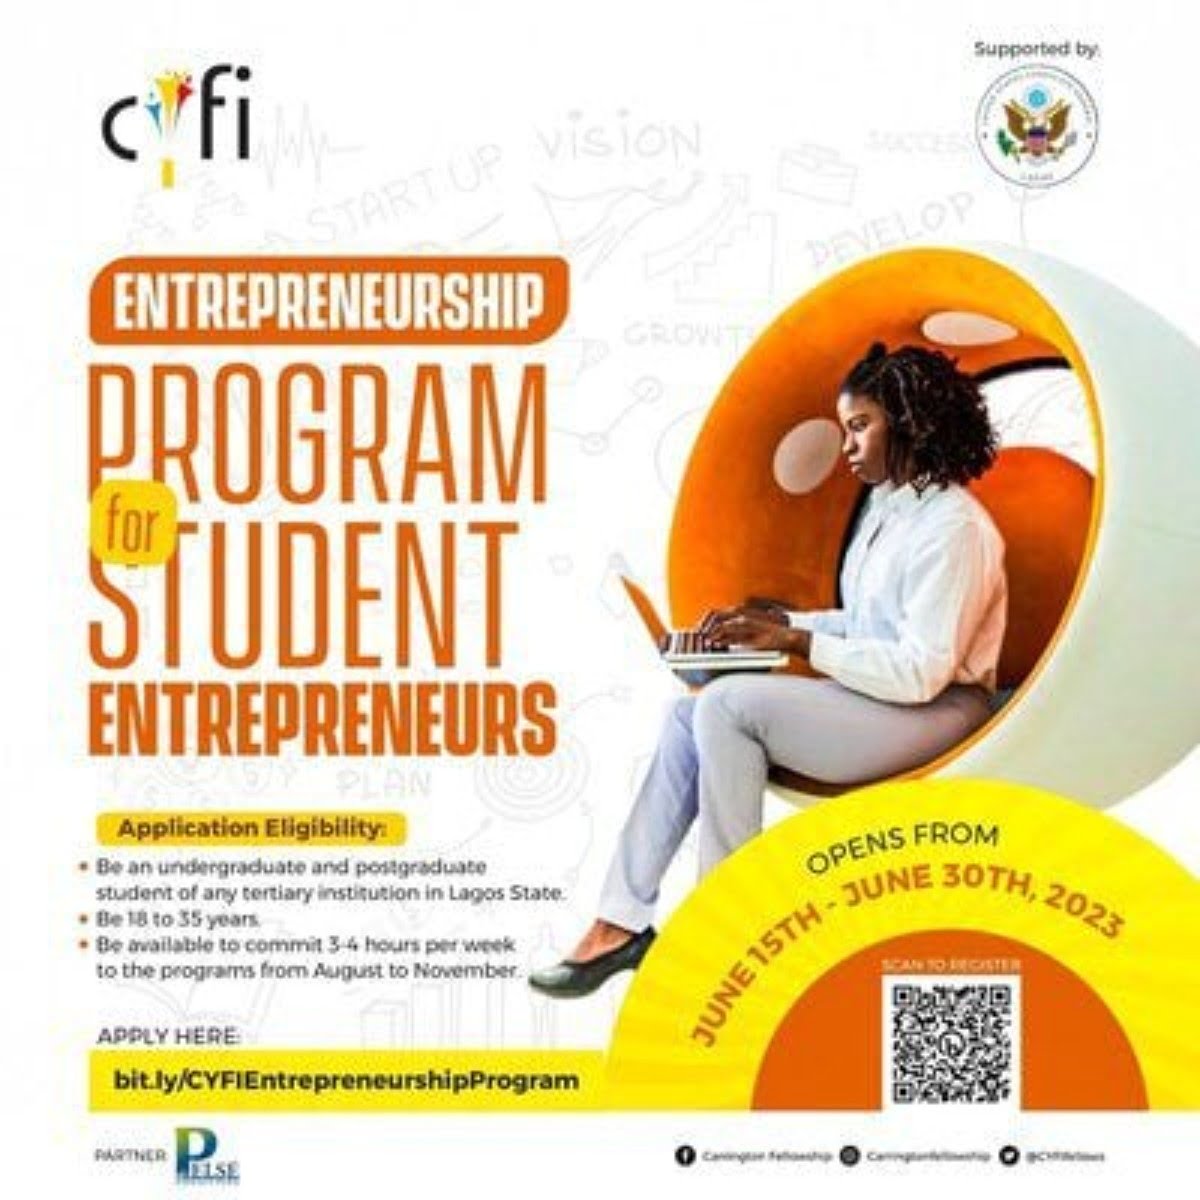 Carrington Youth Fellowship Entrepreneurship Program 2023 for Student Entrepreneurs